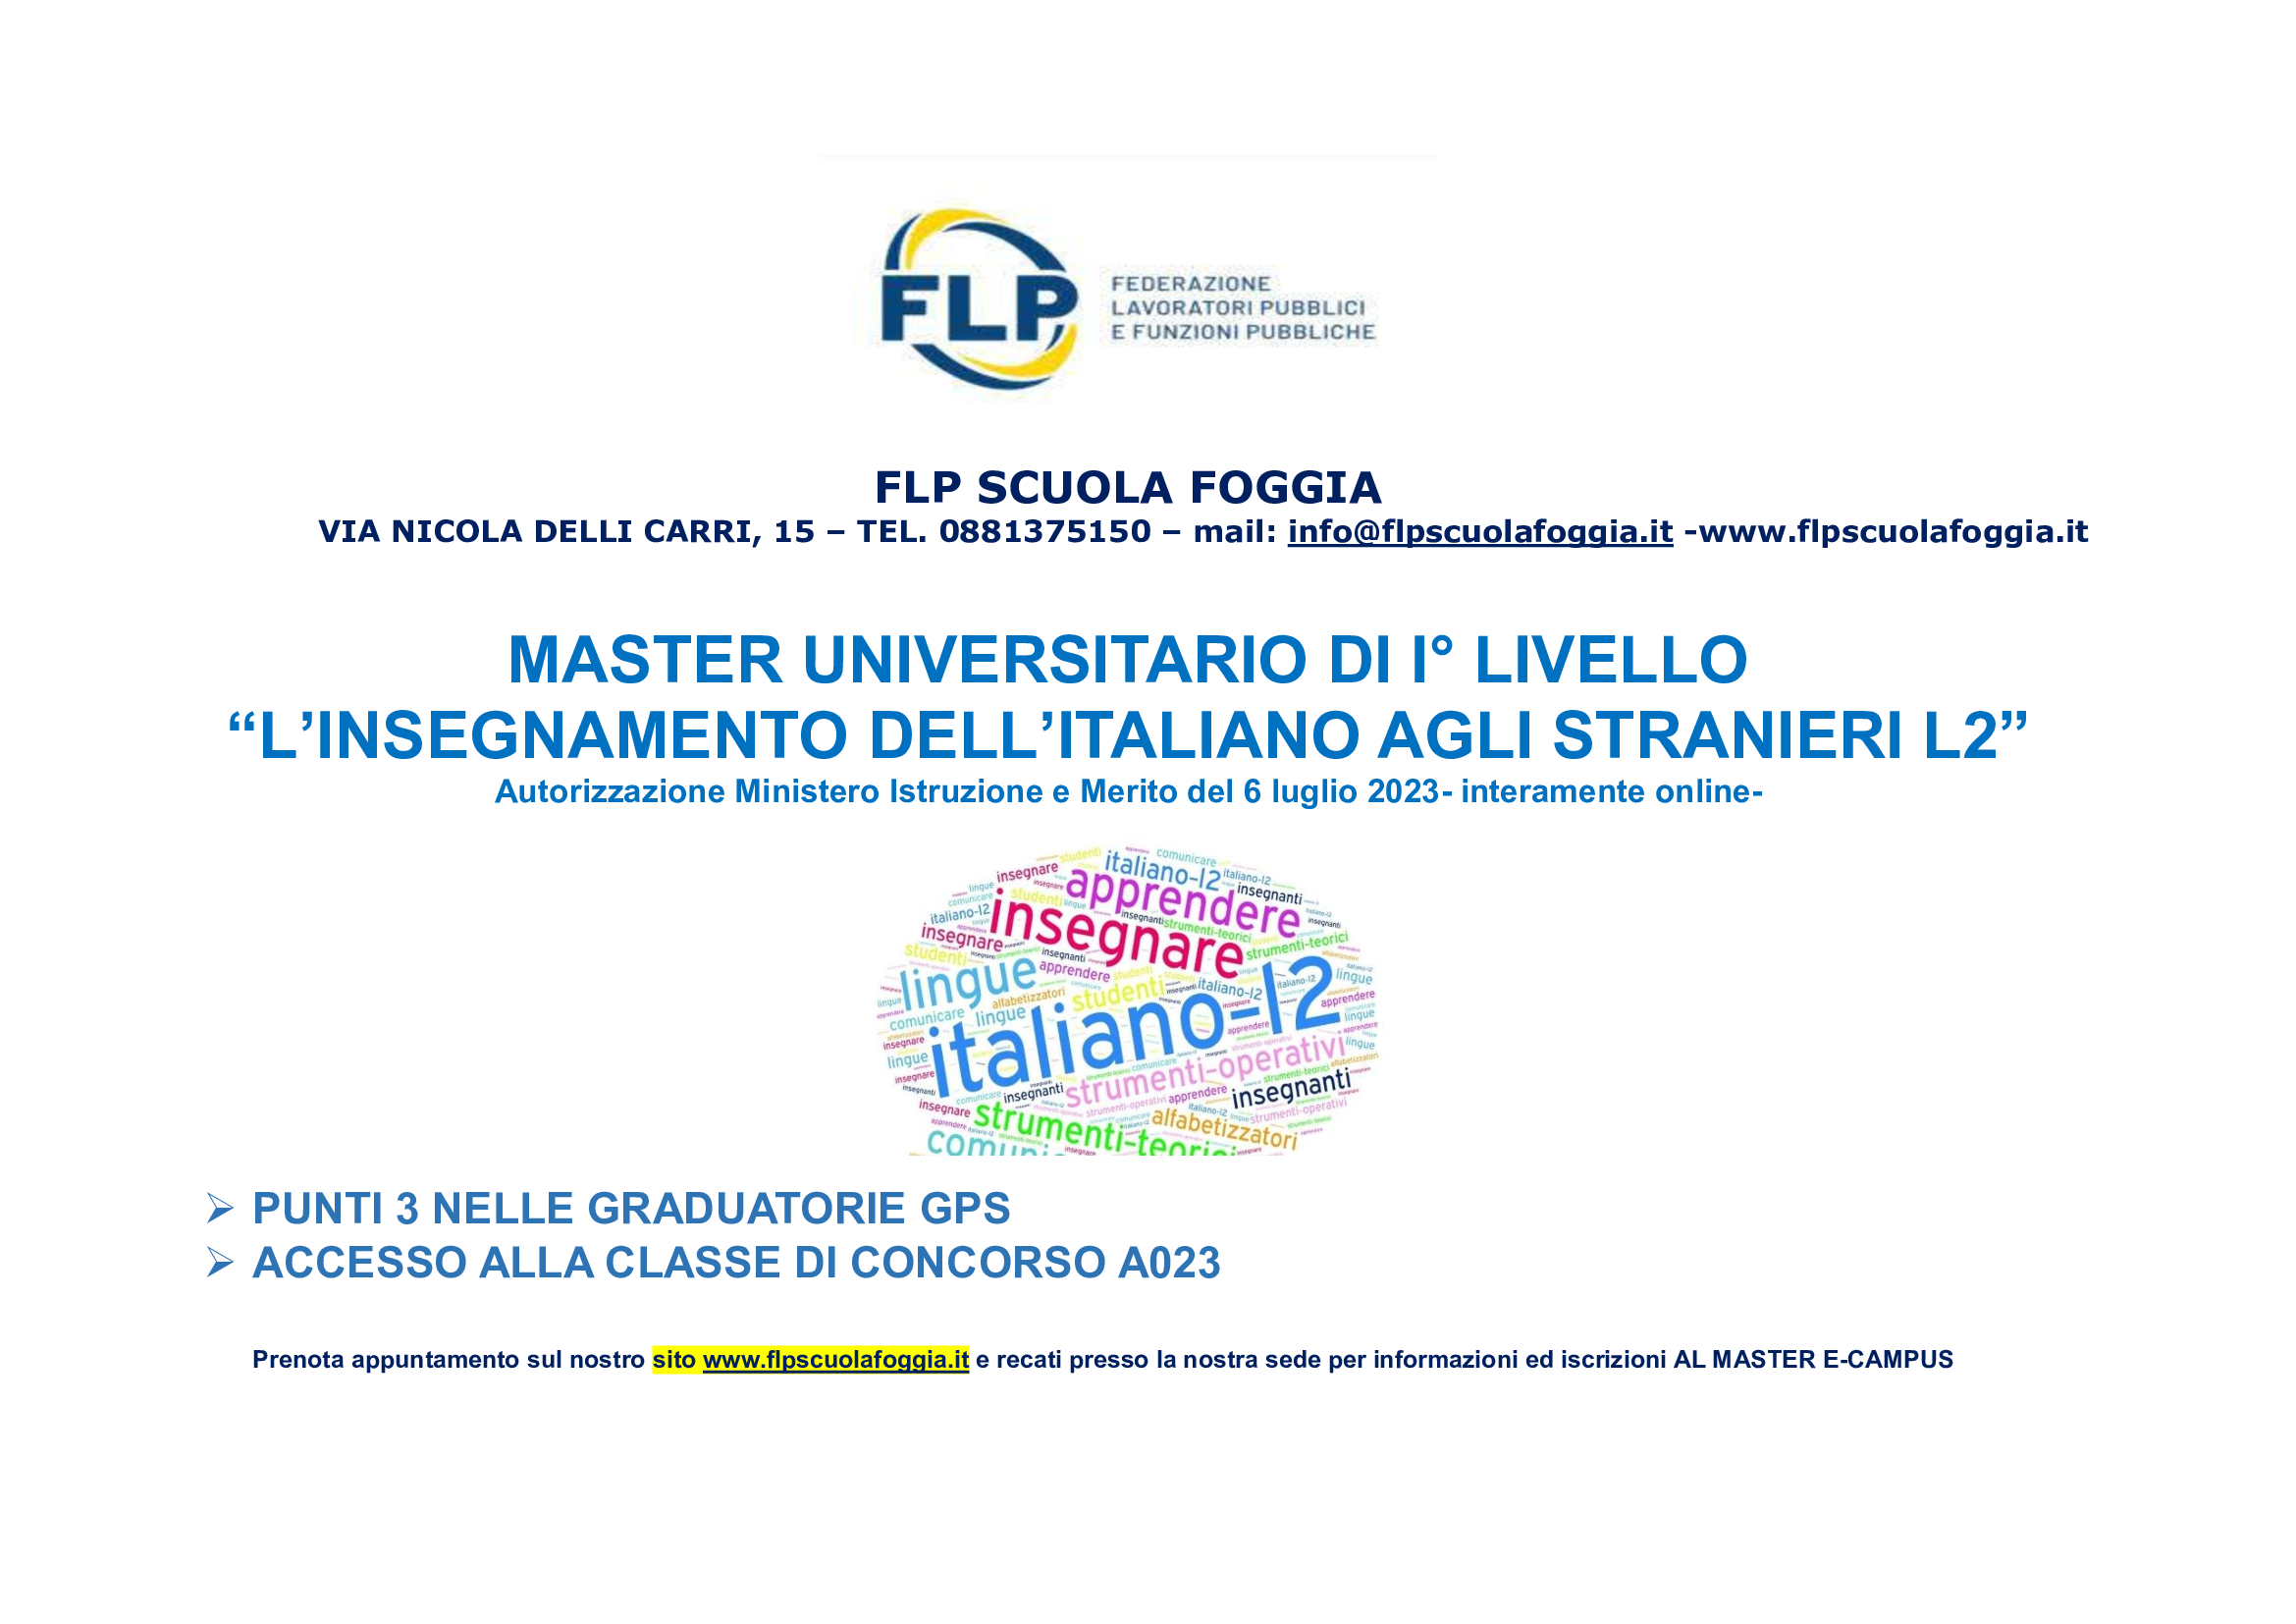 Didattica Italiano lingua straniera (L2)